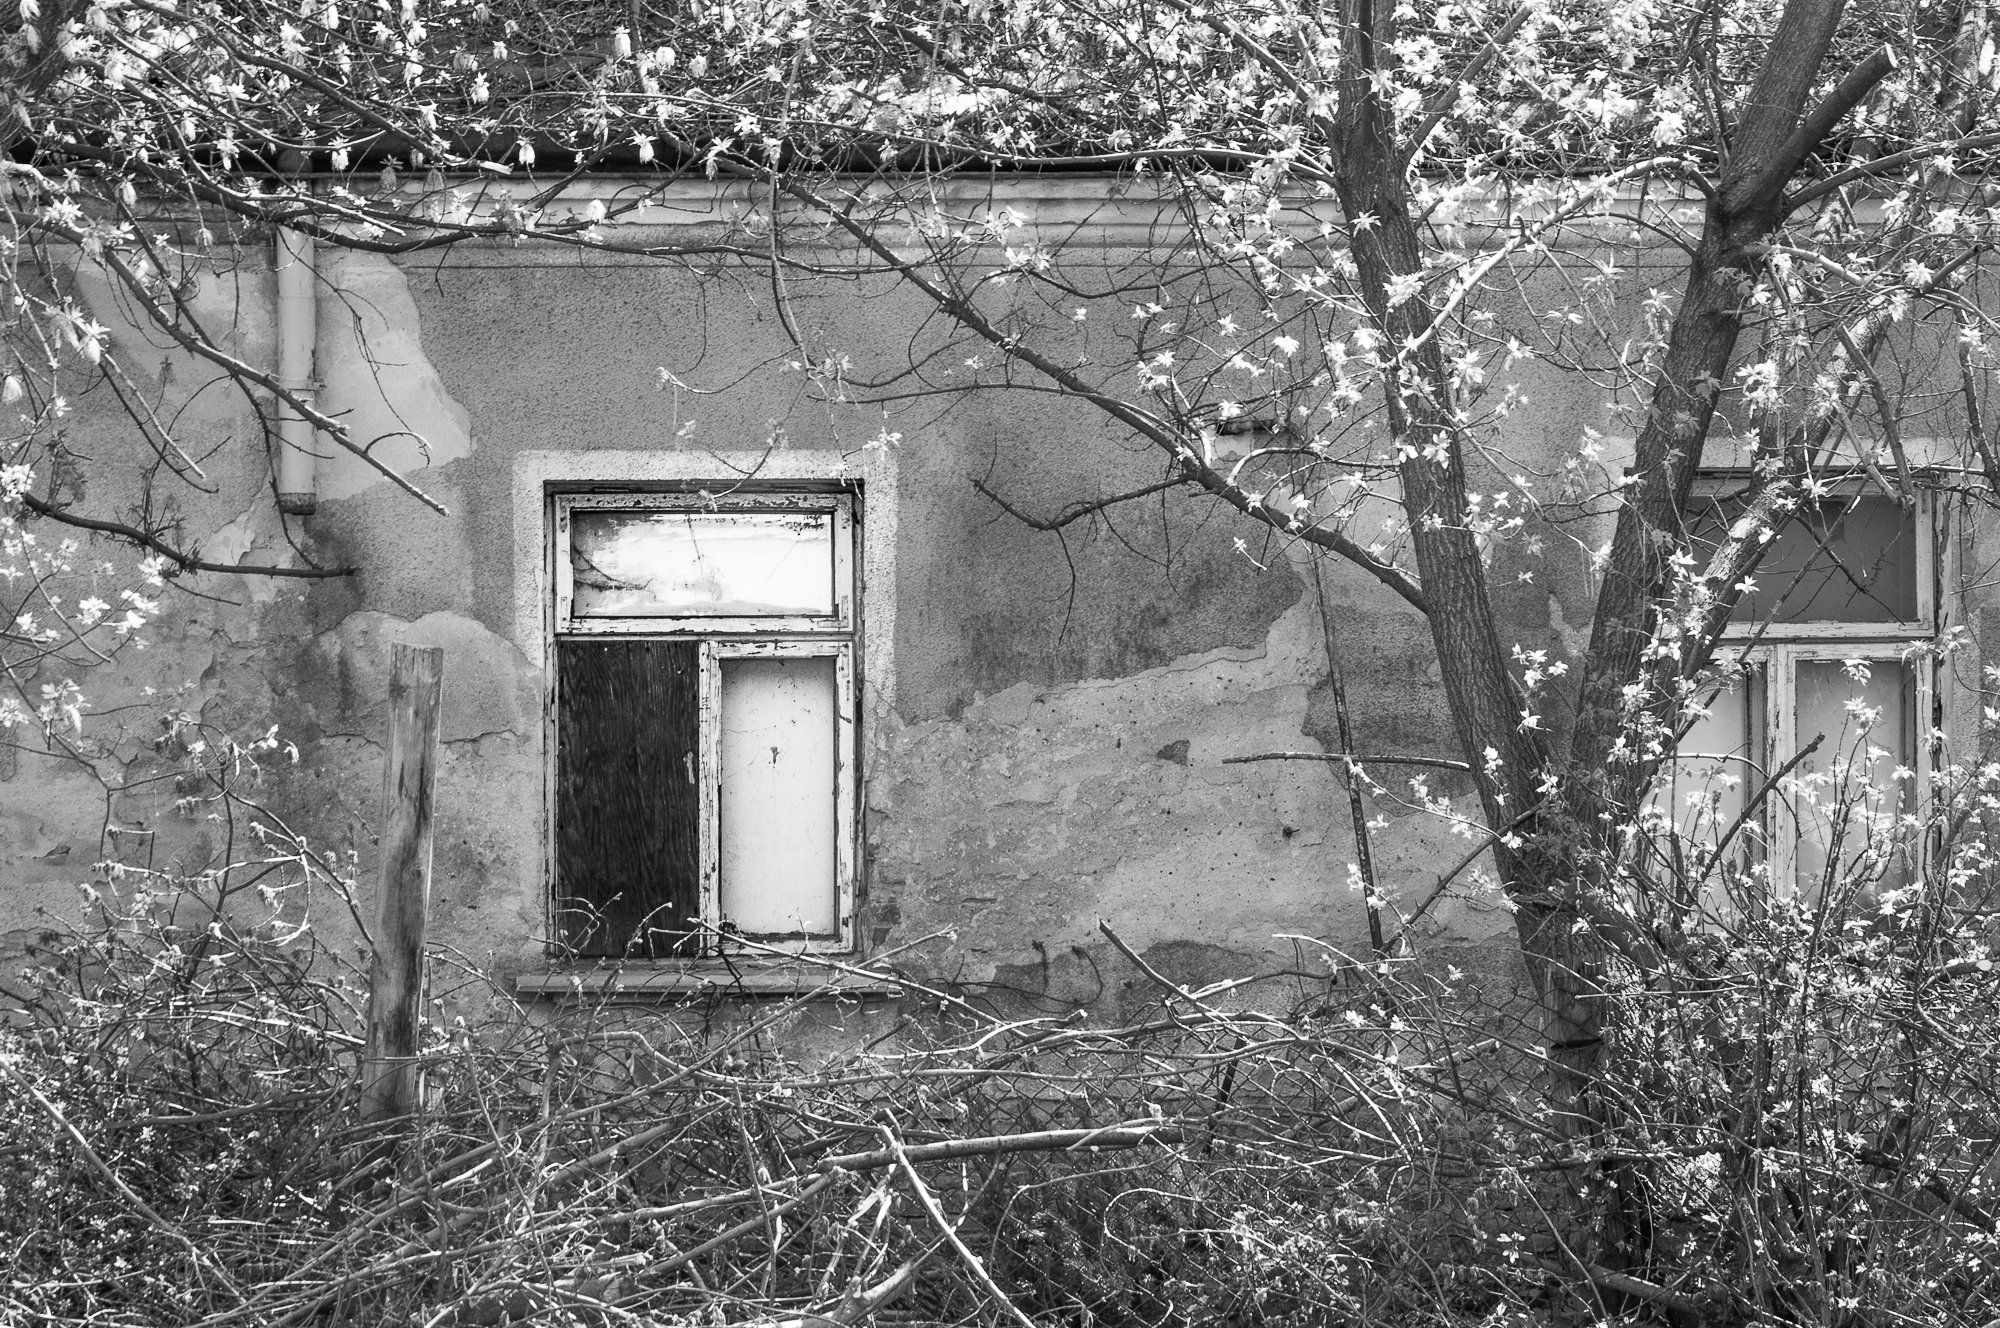 Adam Mazek Photography Warsaw (Warszawa) 2019. Post: "Being a part of the history of art." Minimalism. Window.